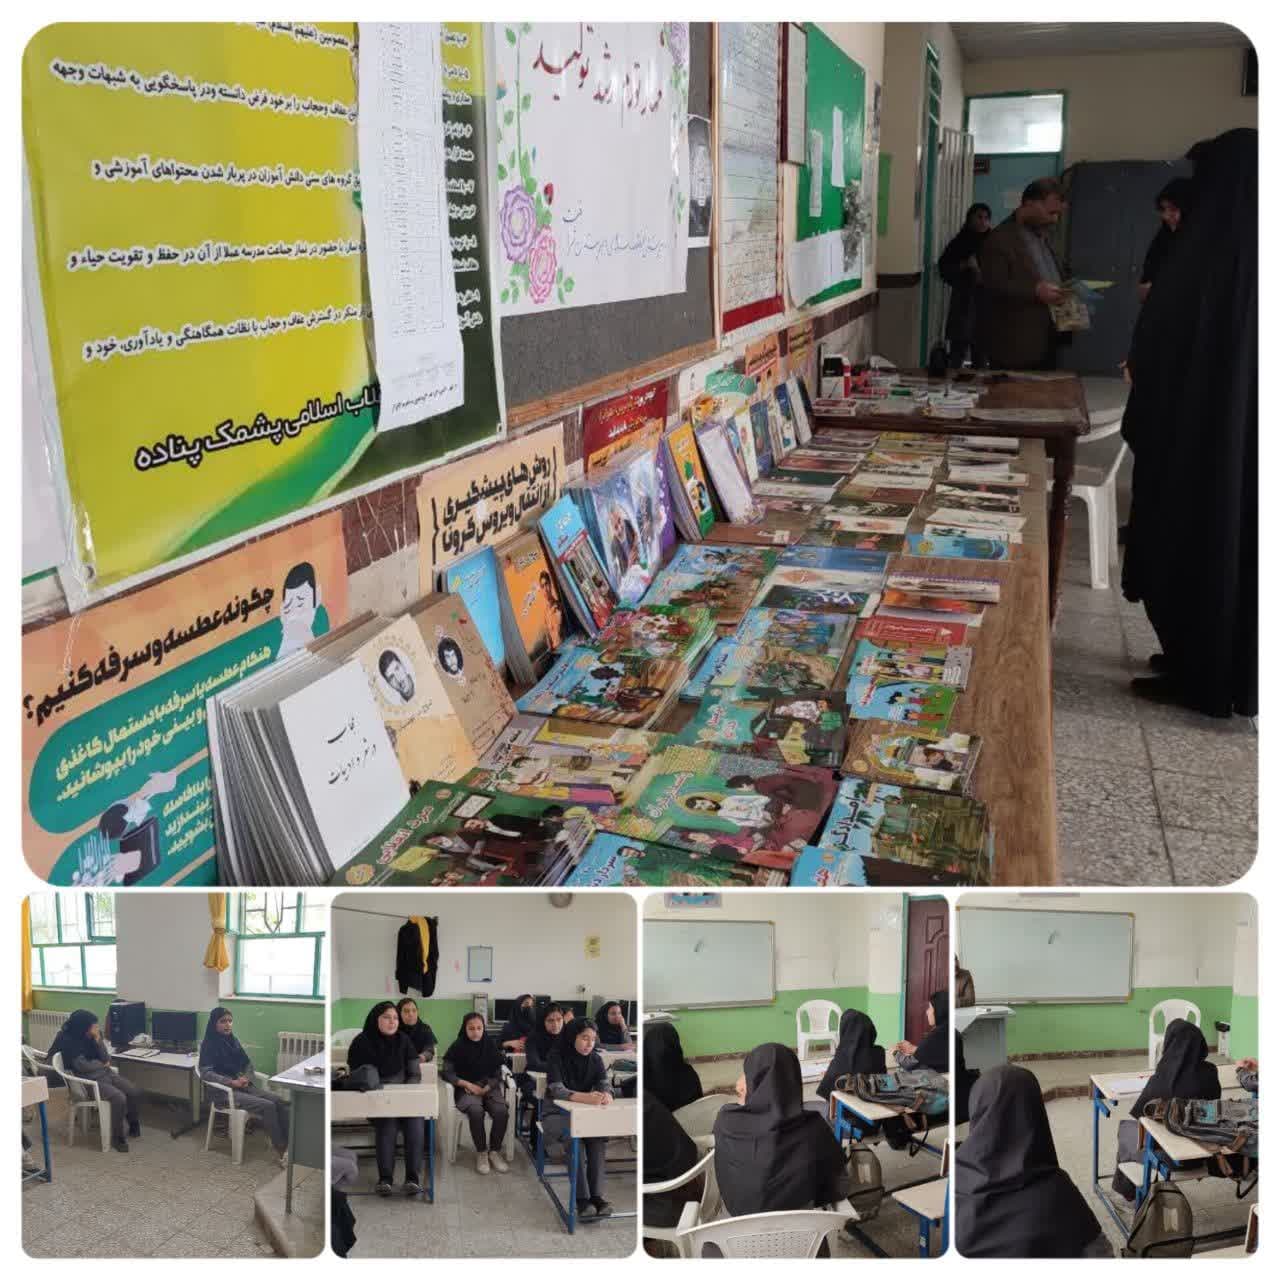 برگزاری نمایشگاه کتاب و کلاس شهید شناسی در مدرسه شرافت و انقلاب اسلامی روستای پشمک پناده گنبدکاووس